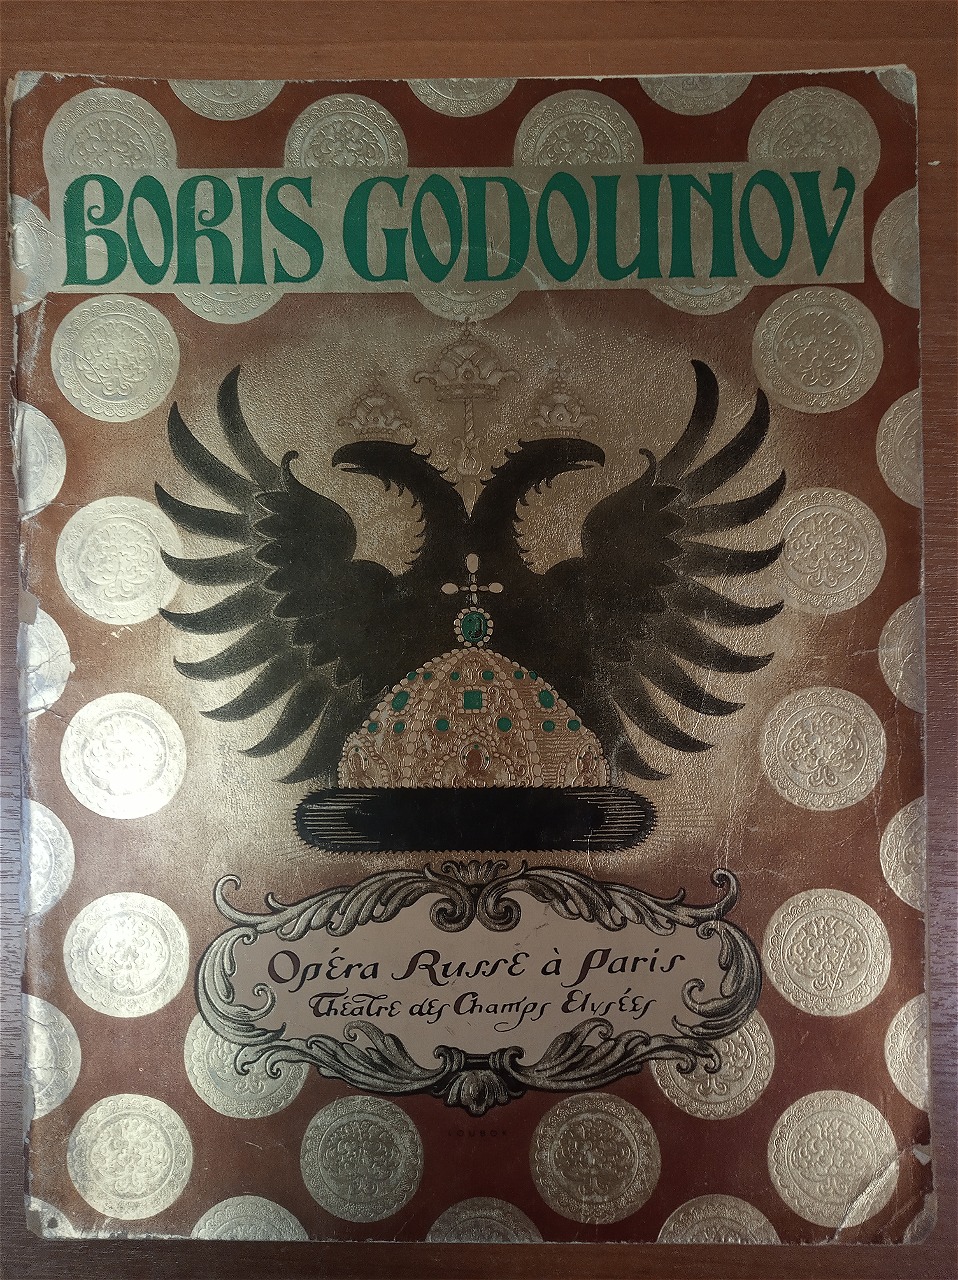 РГБИ приобрела коллекцию редких антикварных книг из библиотеки Ильи Зильберштейна